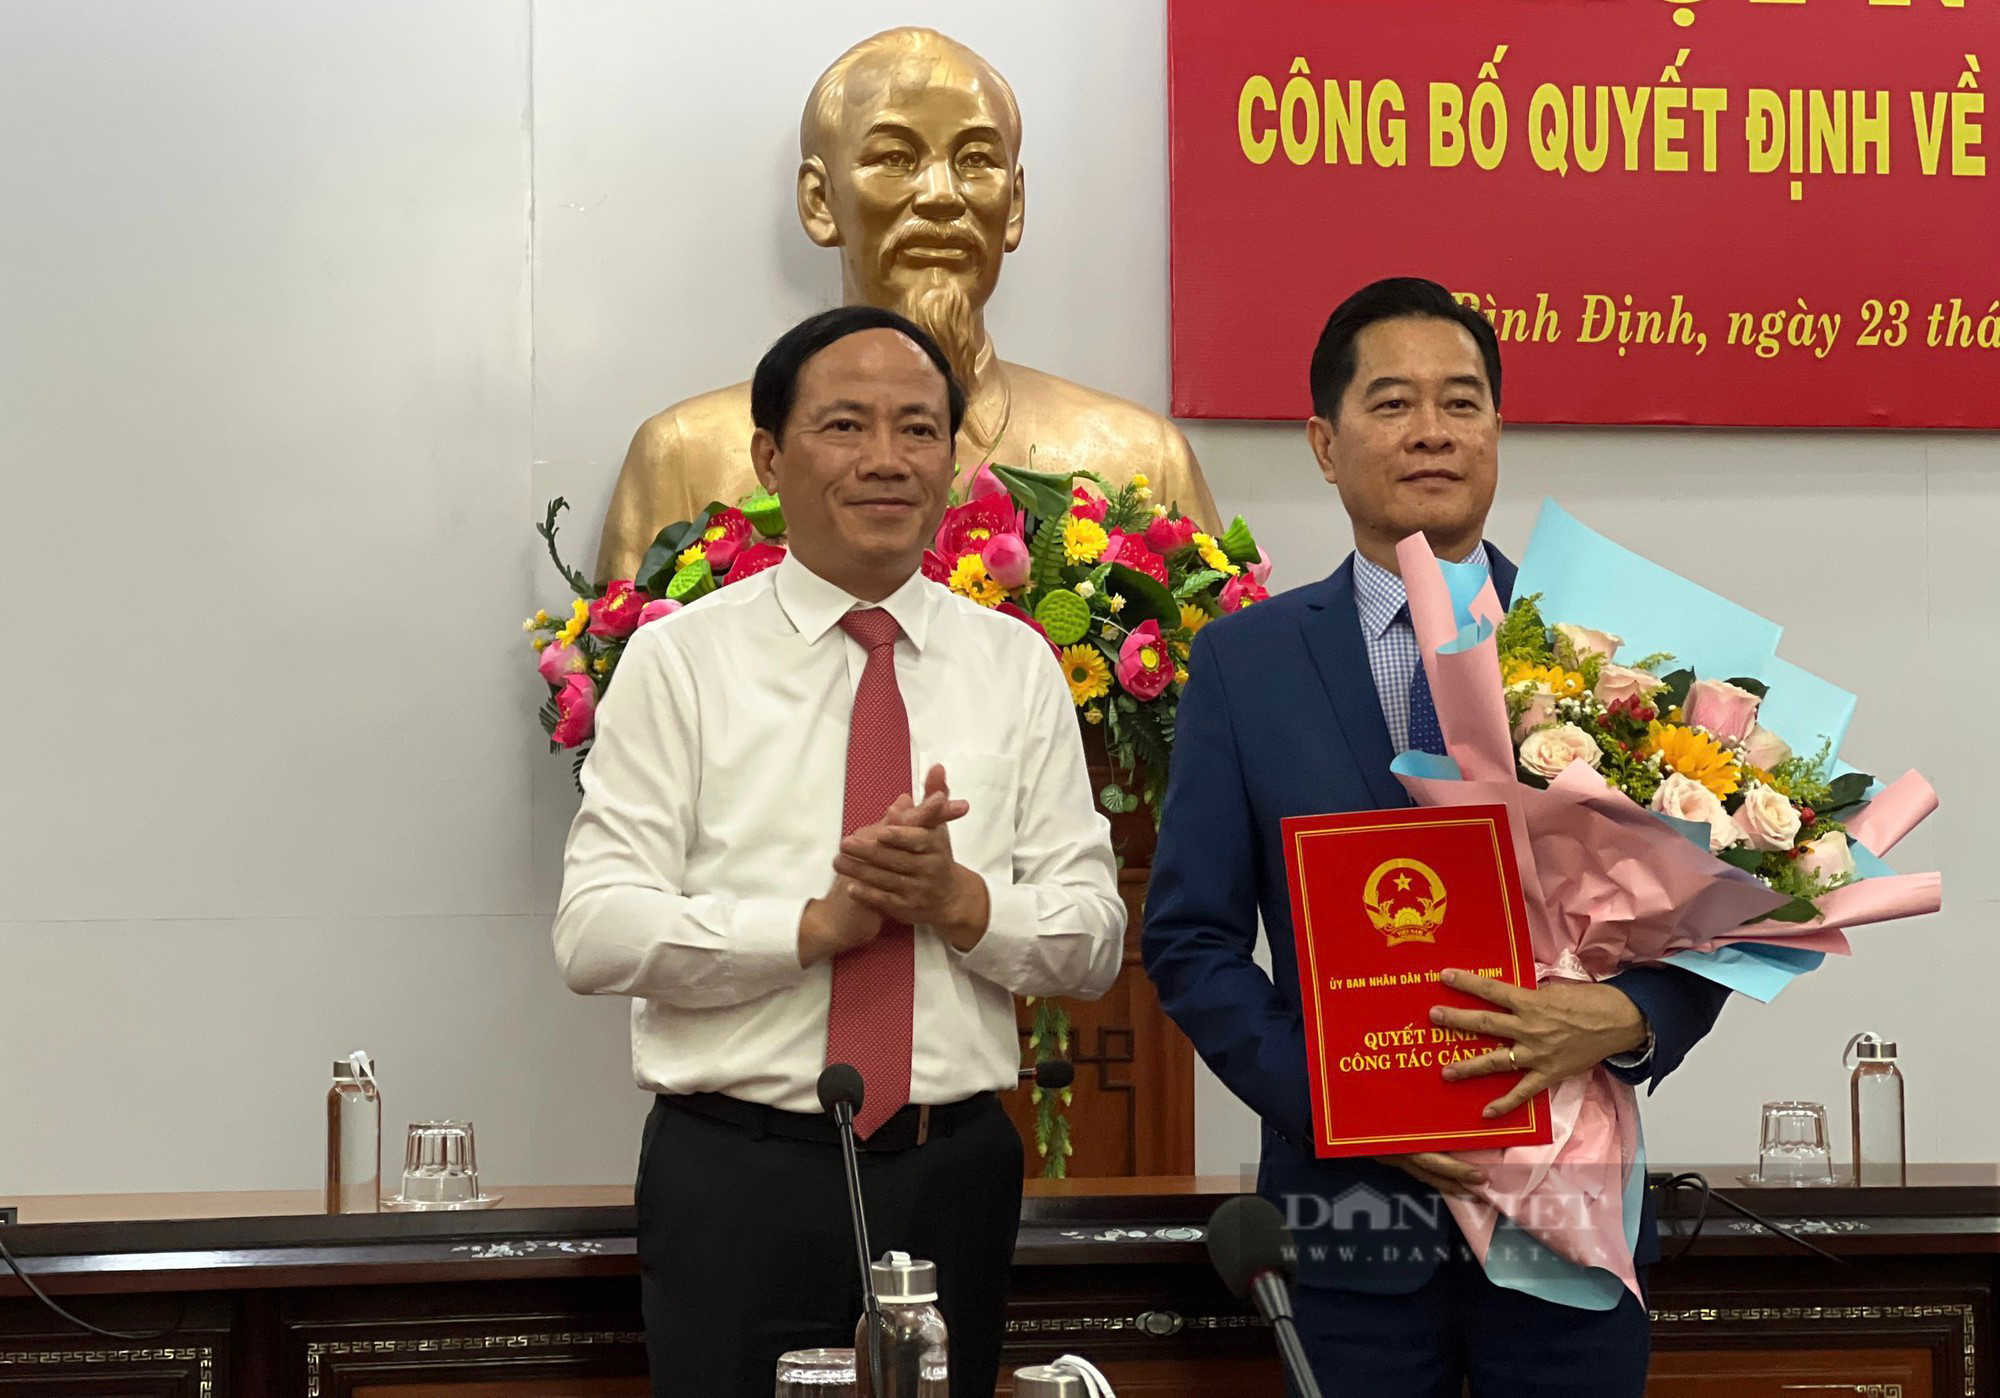 Nhân sự tỉnh Bình Định: Bổ nhiệm 2 tân Giám đốc Sở Tài chính và Sở Kế hoạch Đầu tư - Ảnh 2.